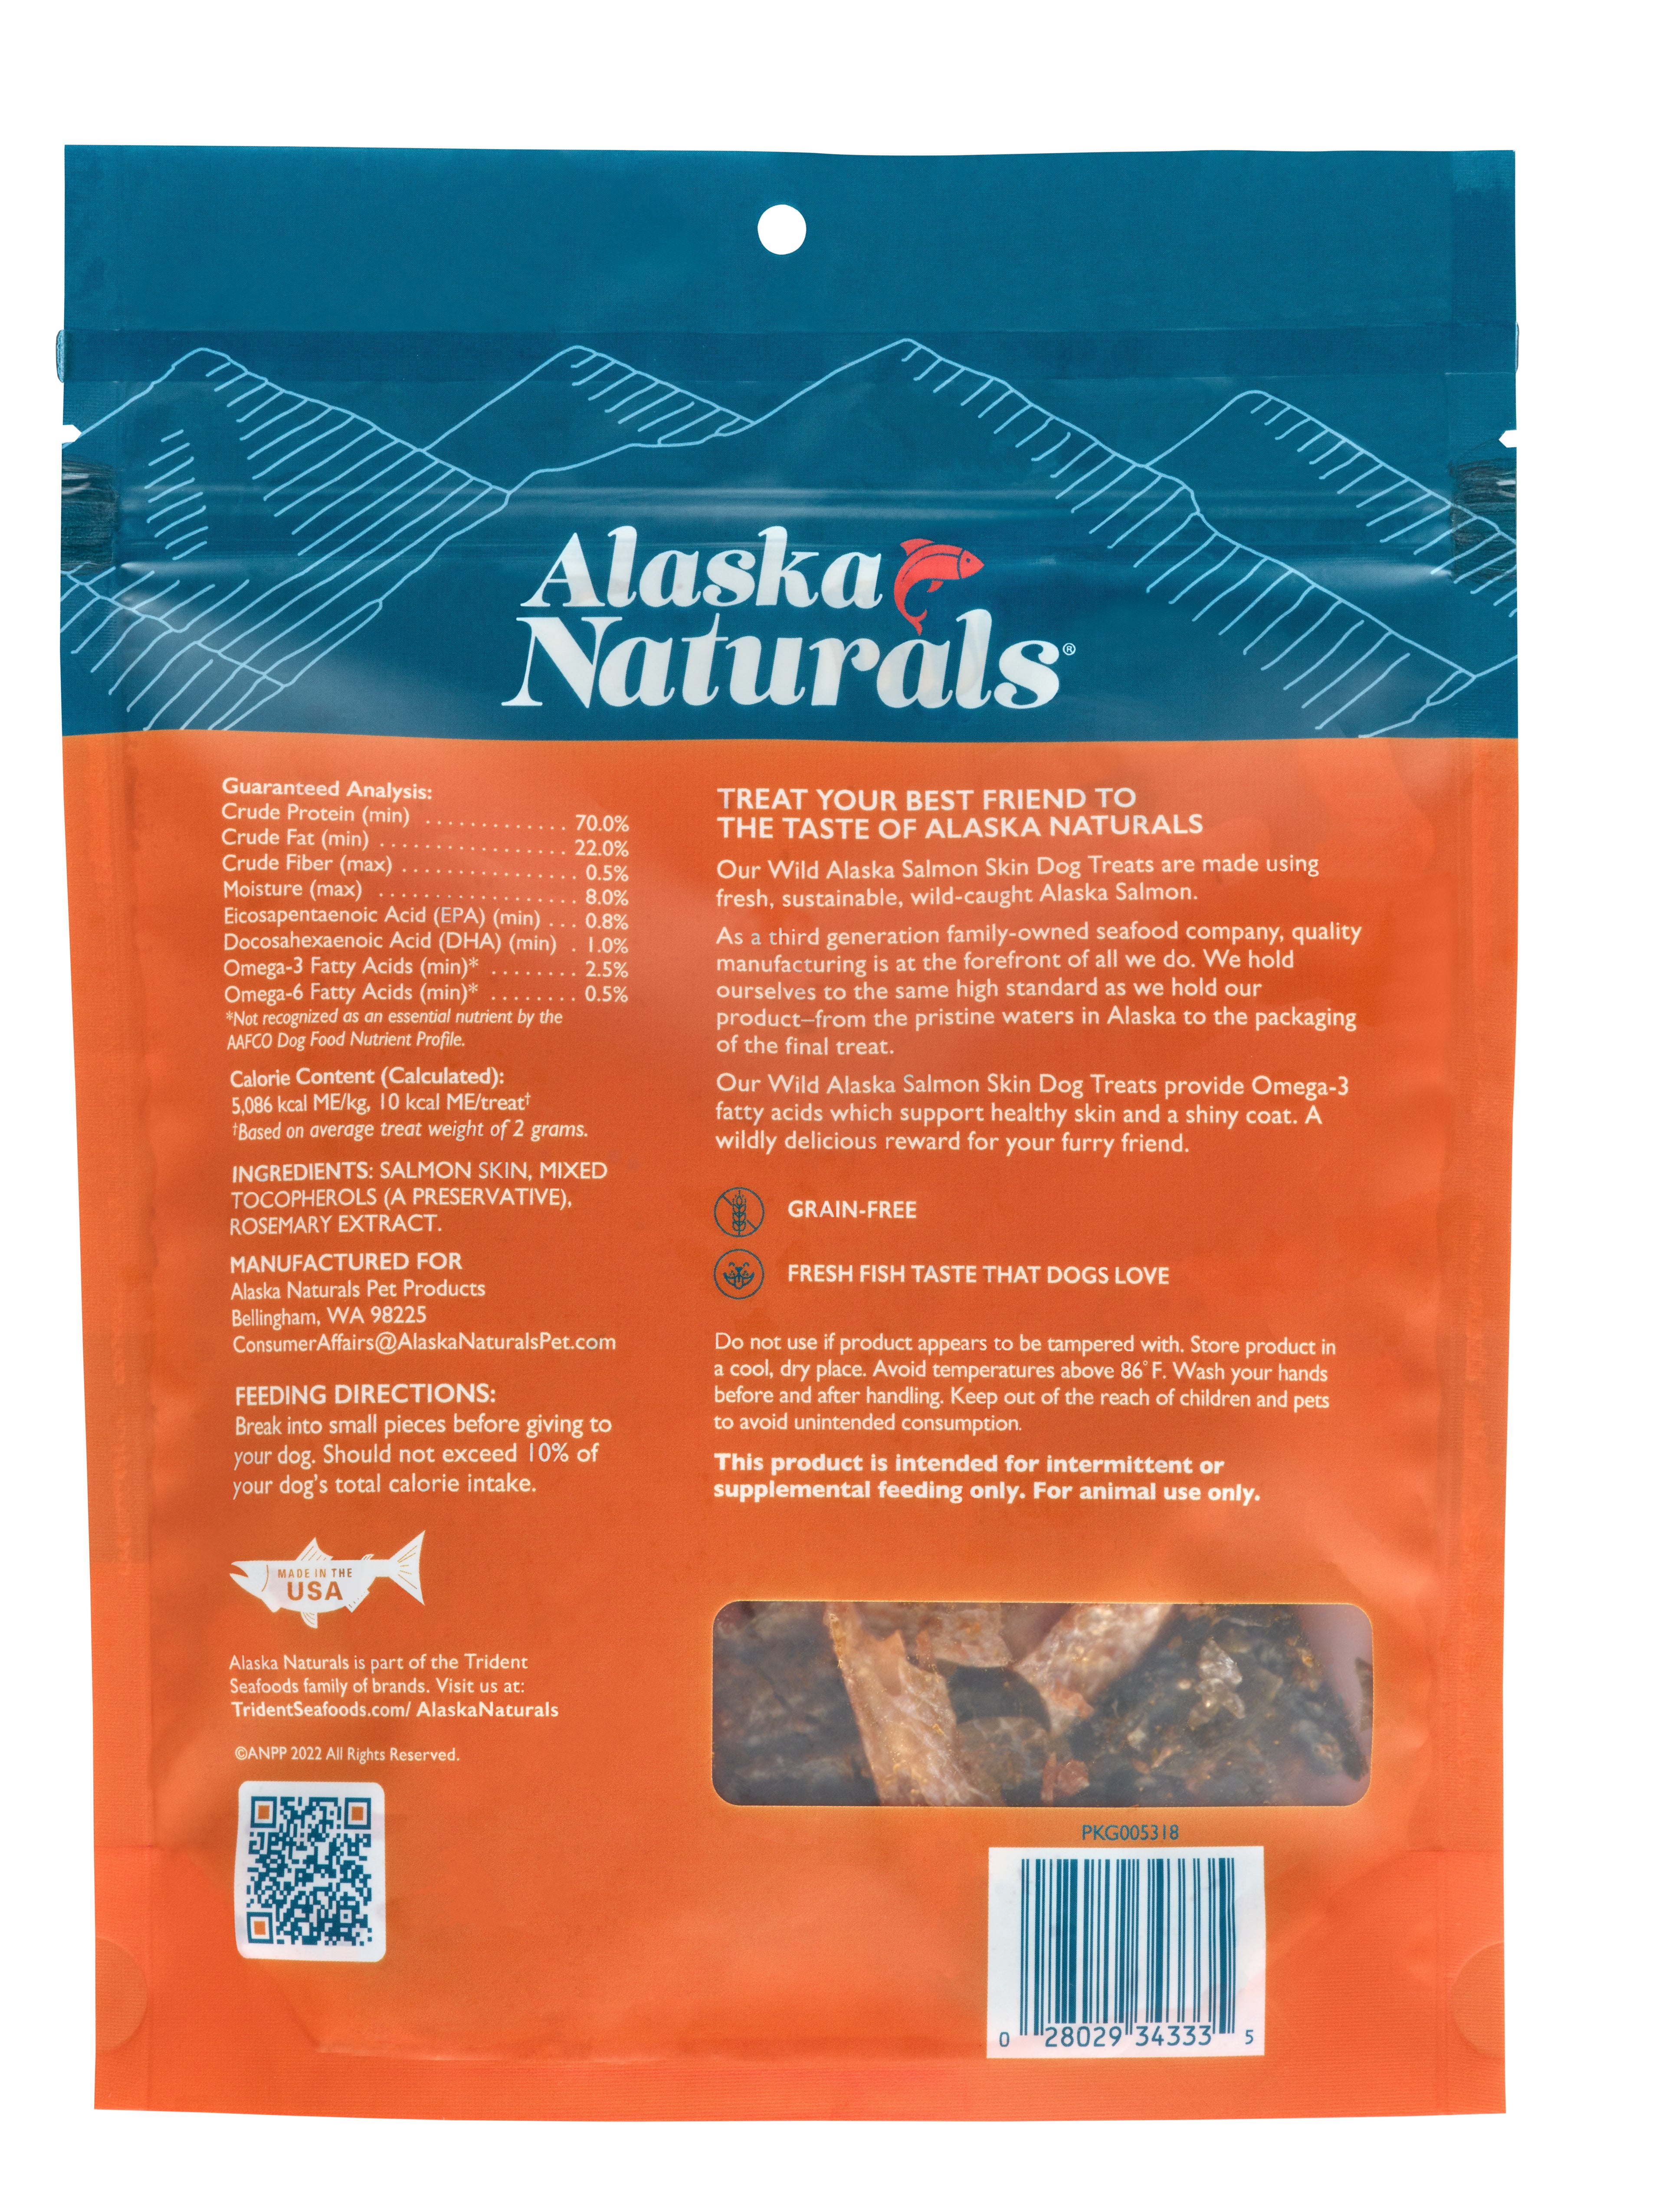 Wild-Caught Alaska Salmon Skin Dog Treats slide 1